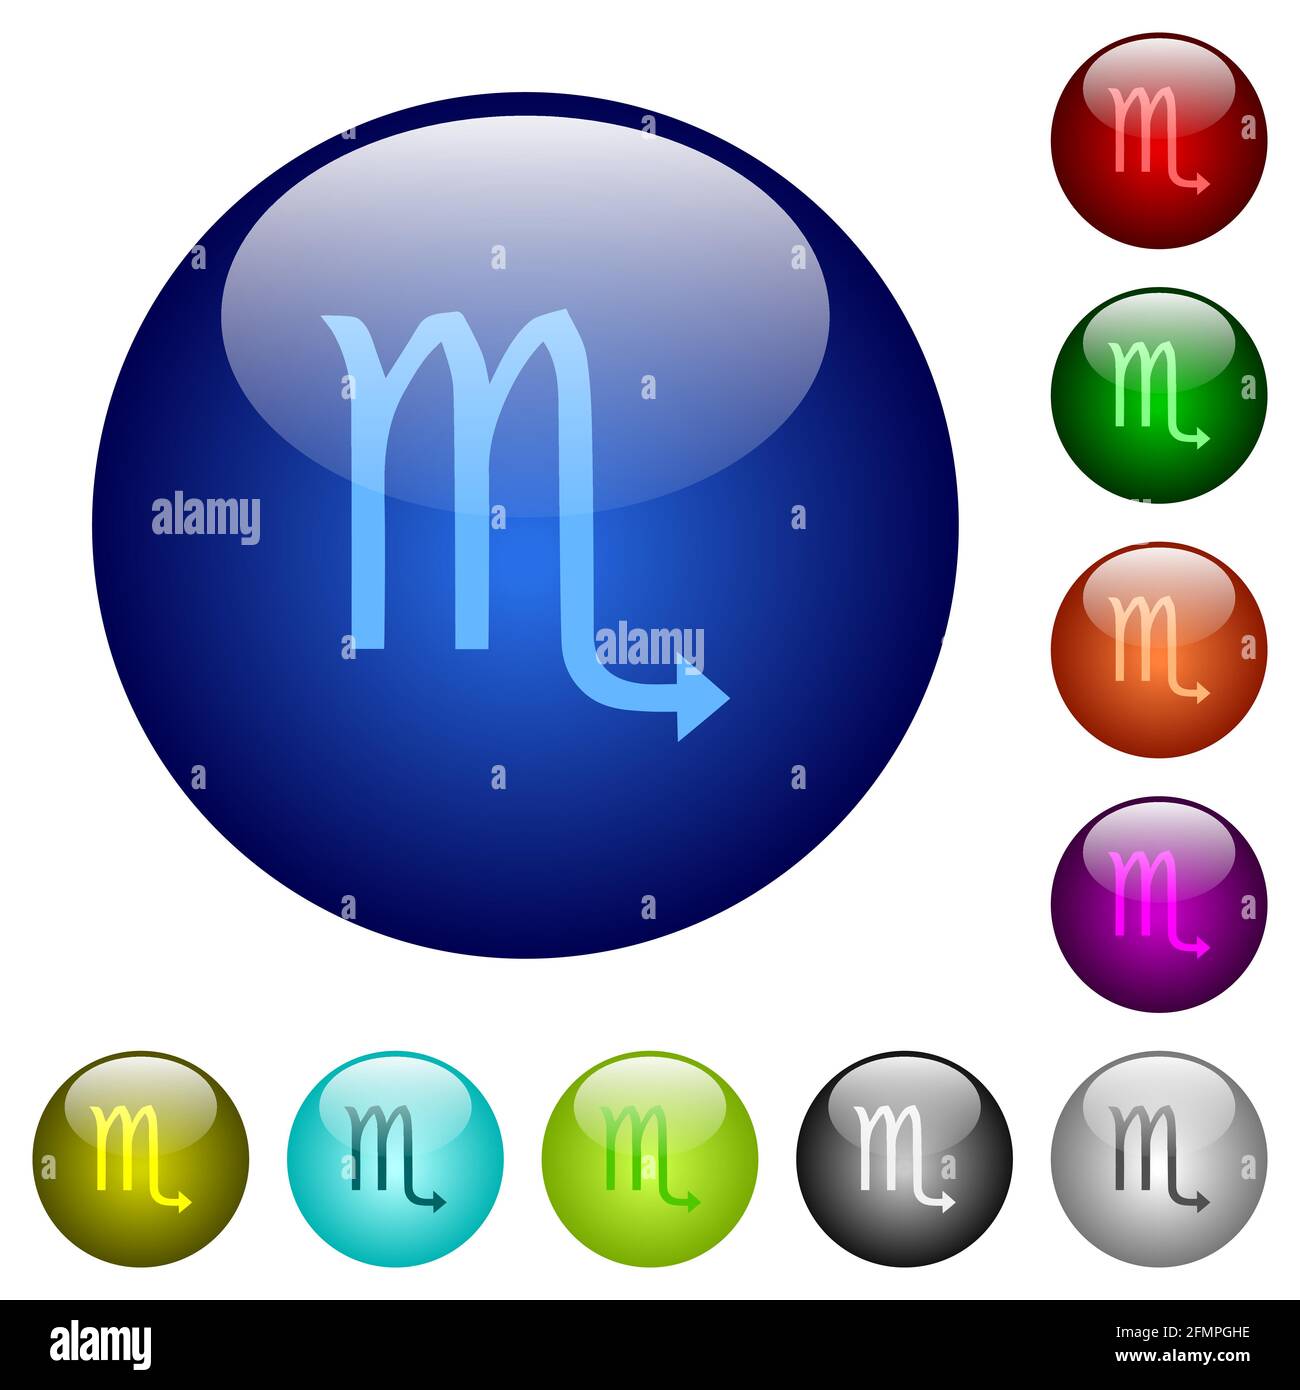 Symbole für Skorpion-Sternzeichen auf runden Glasknöpfen in mehreren Farben.  Angeordnete Ebenenstruktur Stock-Vektorgrafik - Alamy